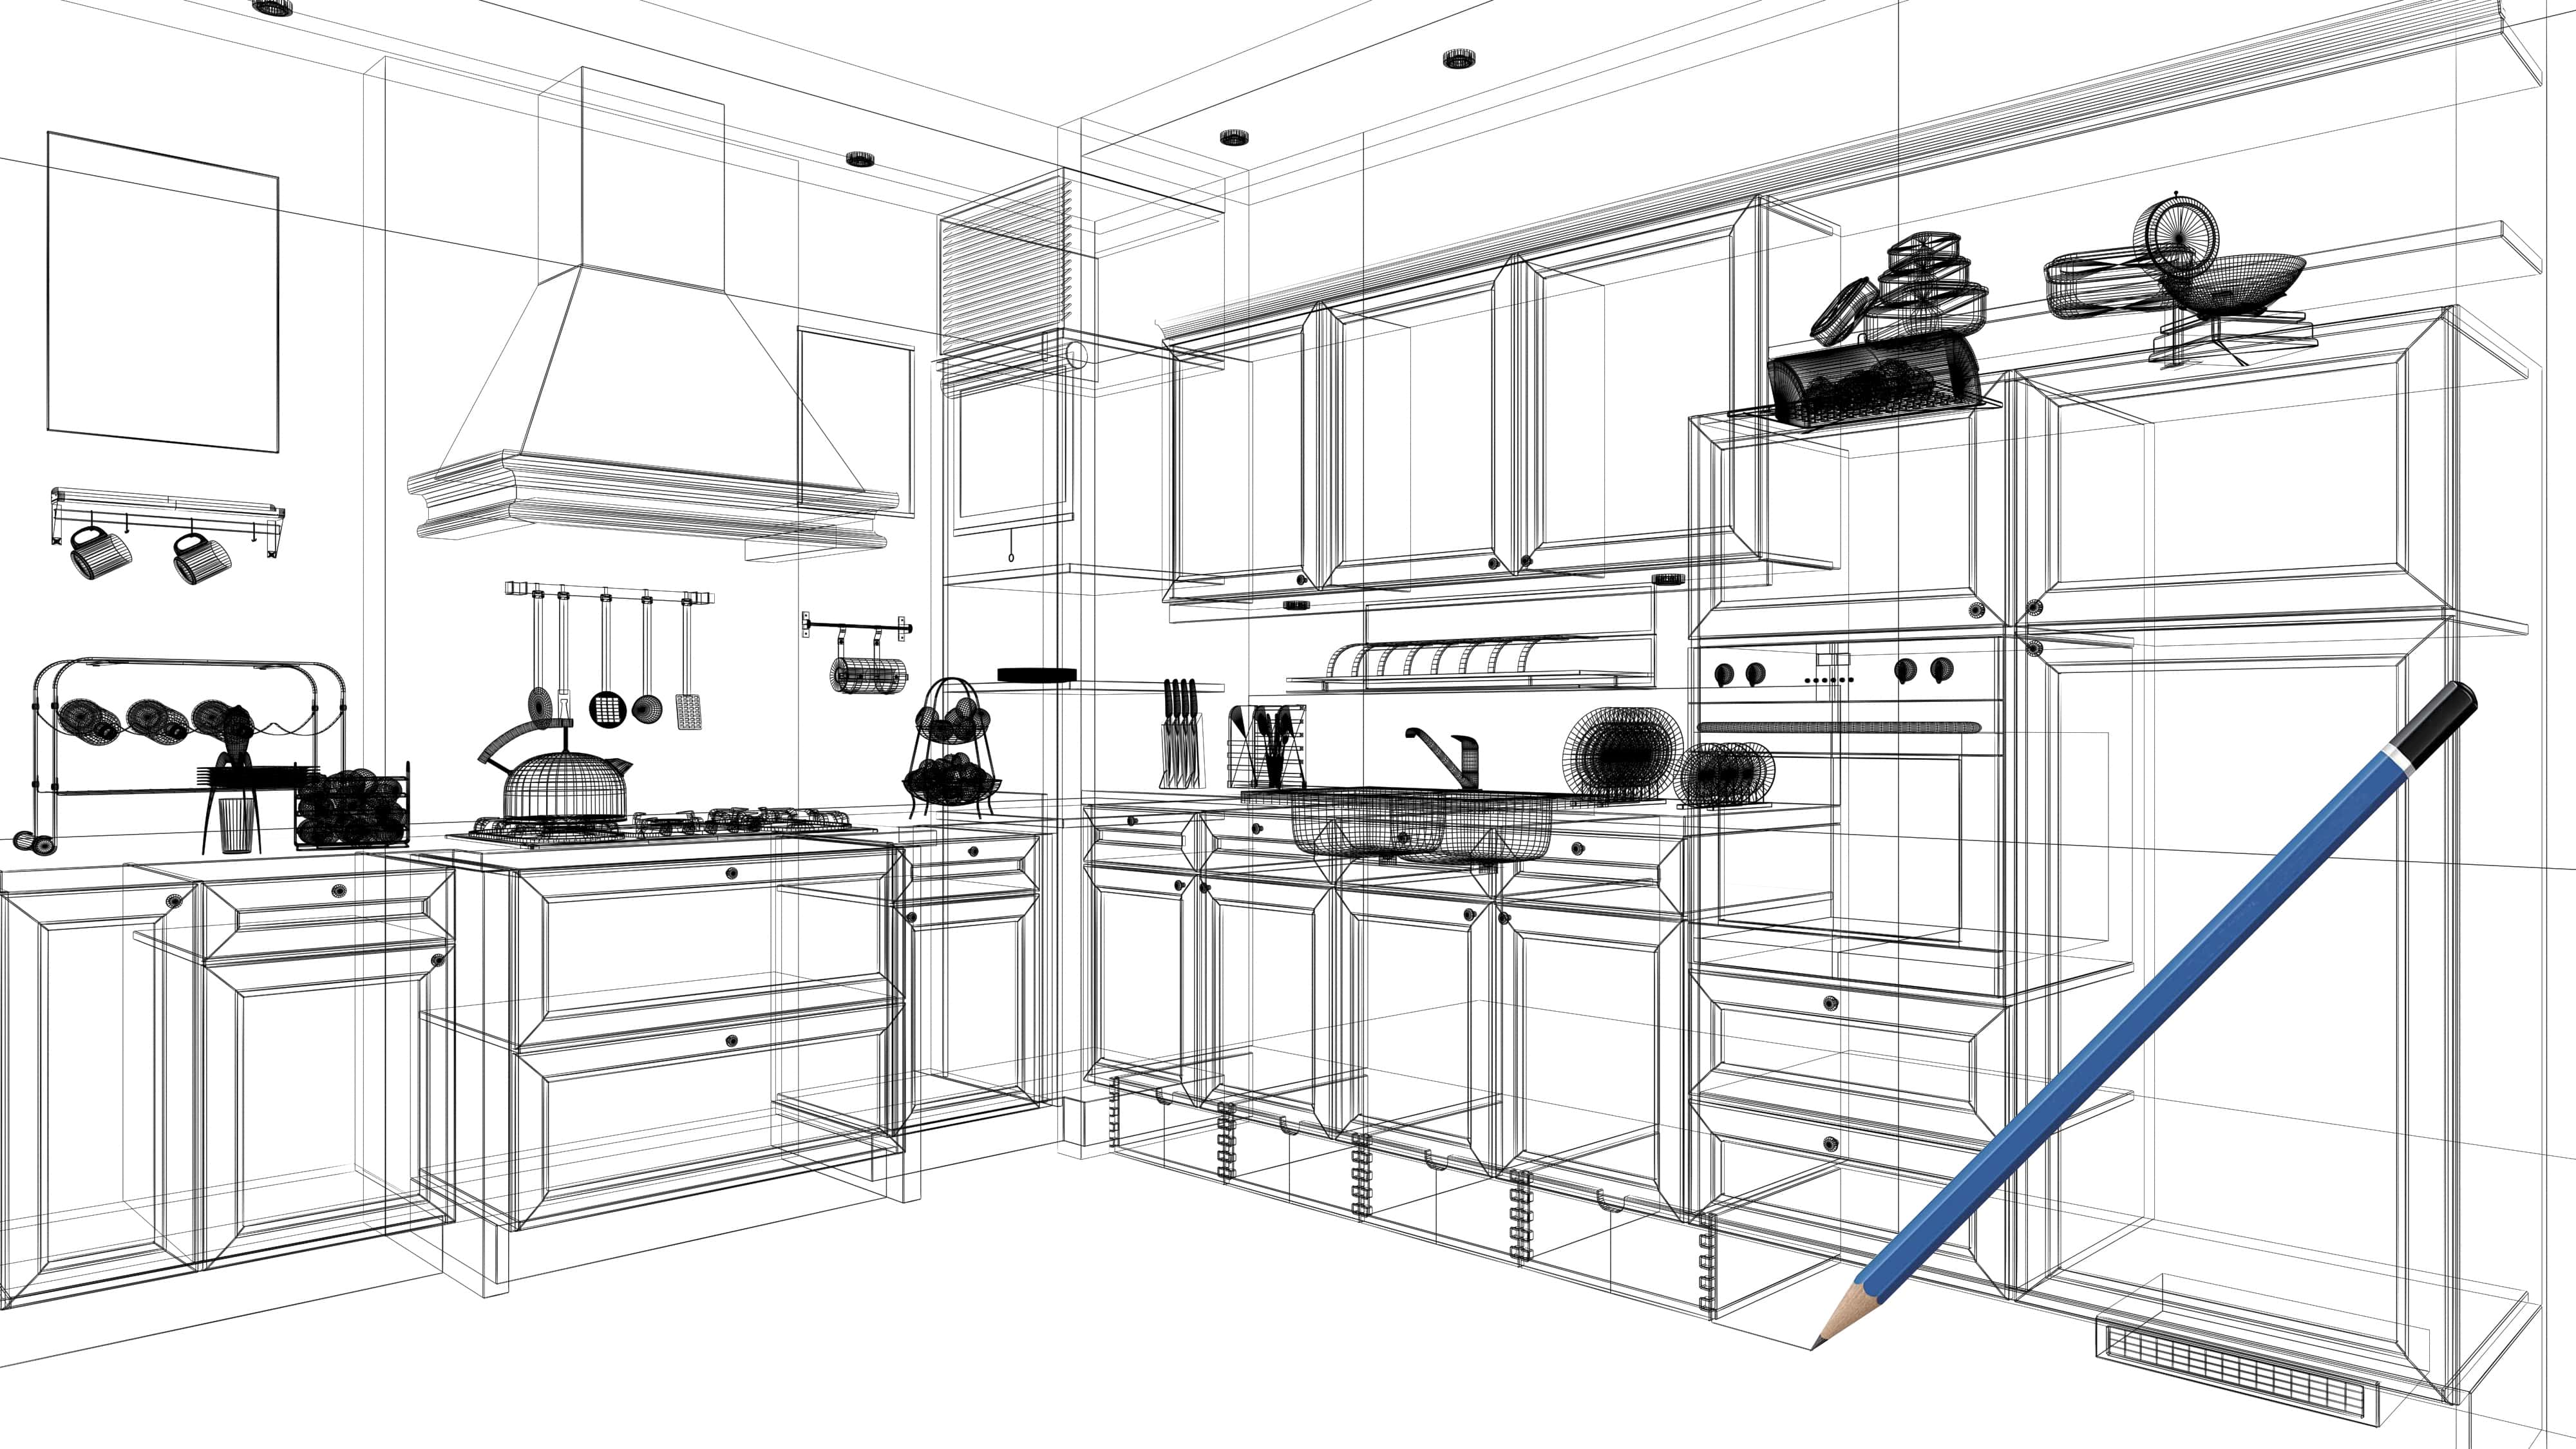  design my kitchen online free